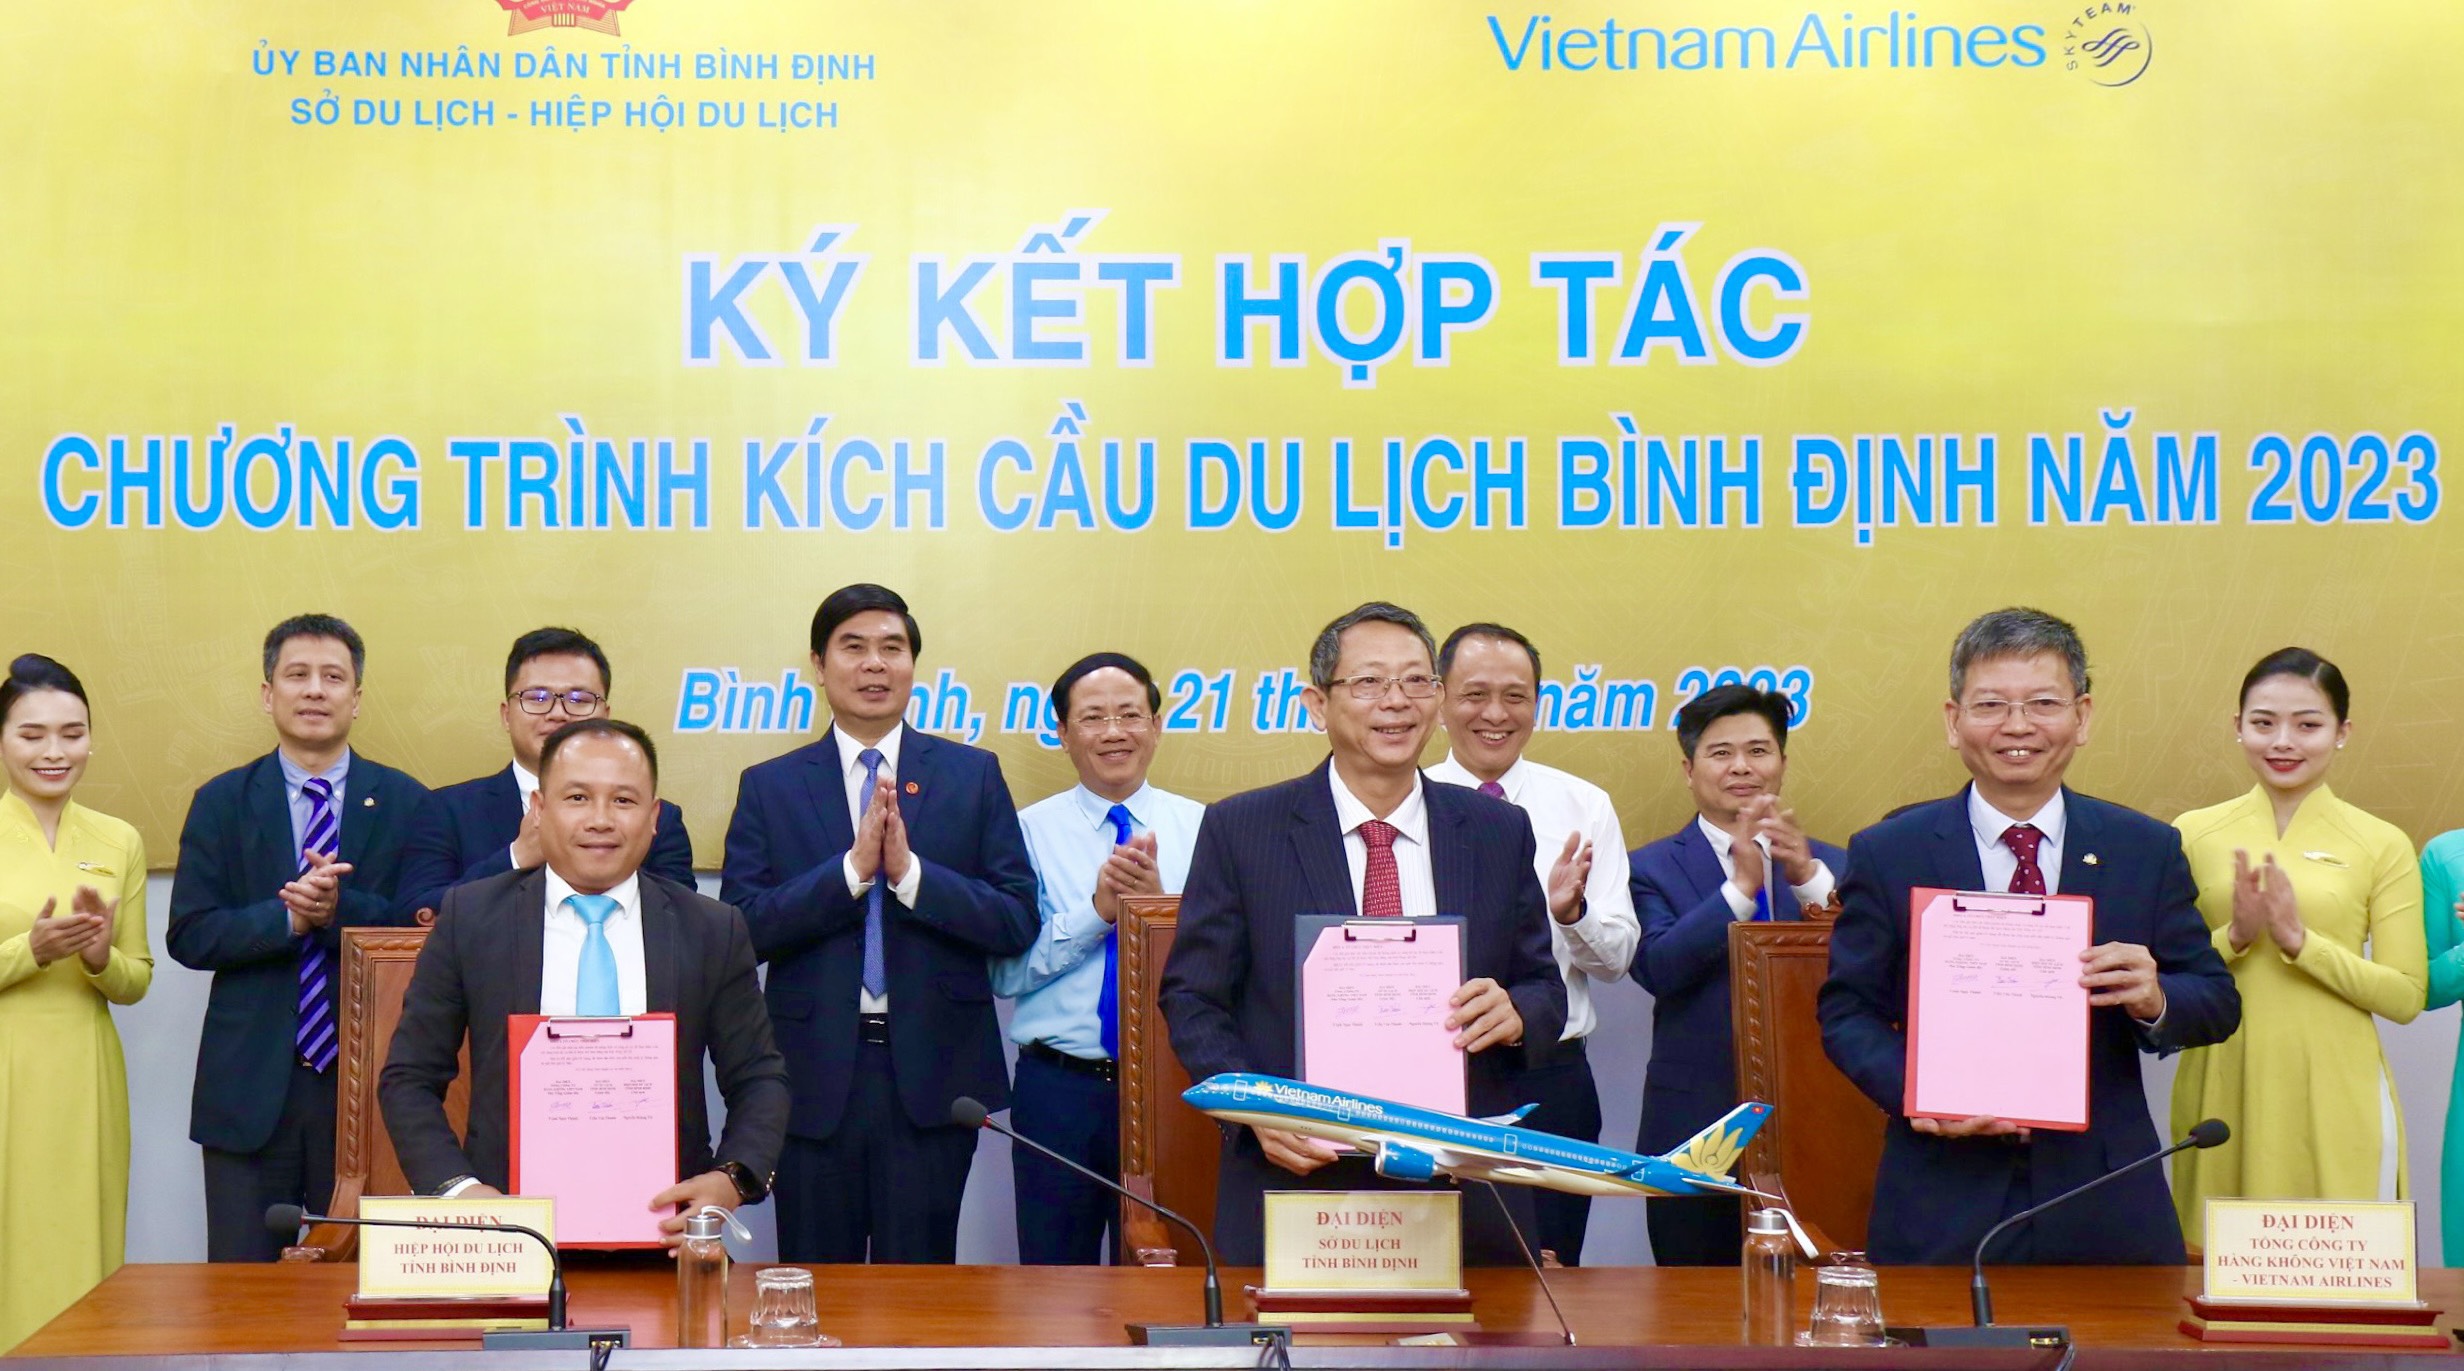 UBND tỉnh Bình Định làm việc với Tổng công ty Hàng không Việt Nam (Vietnam Airlines)